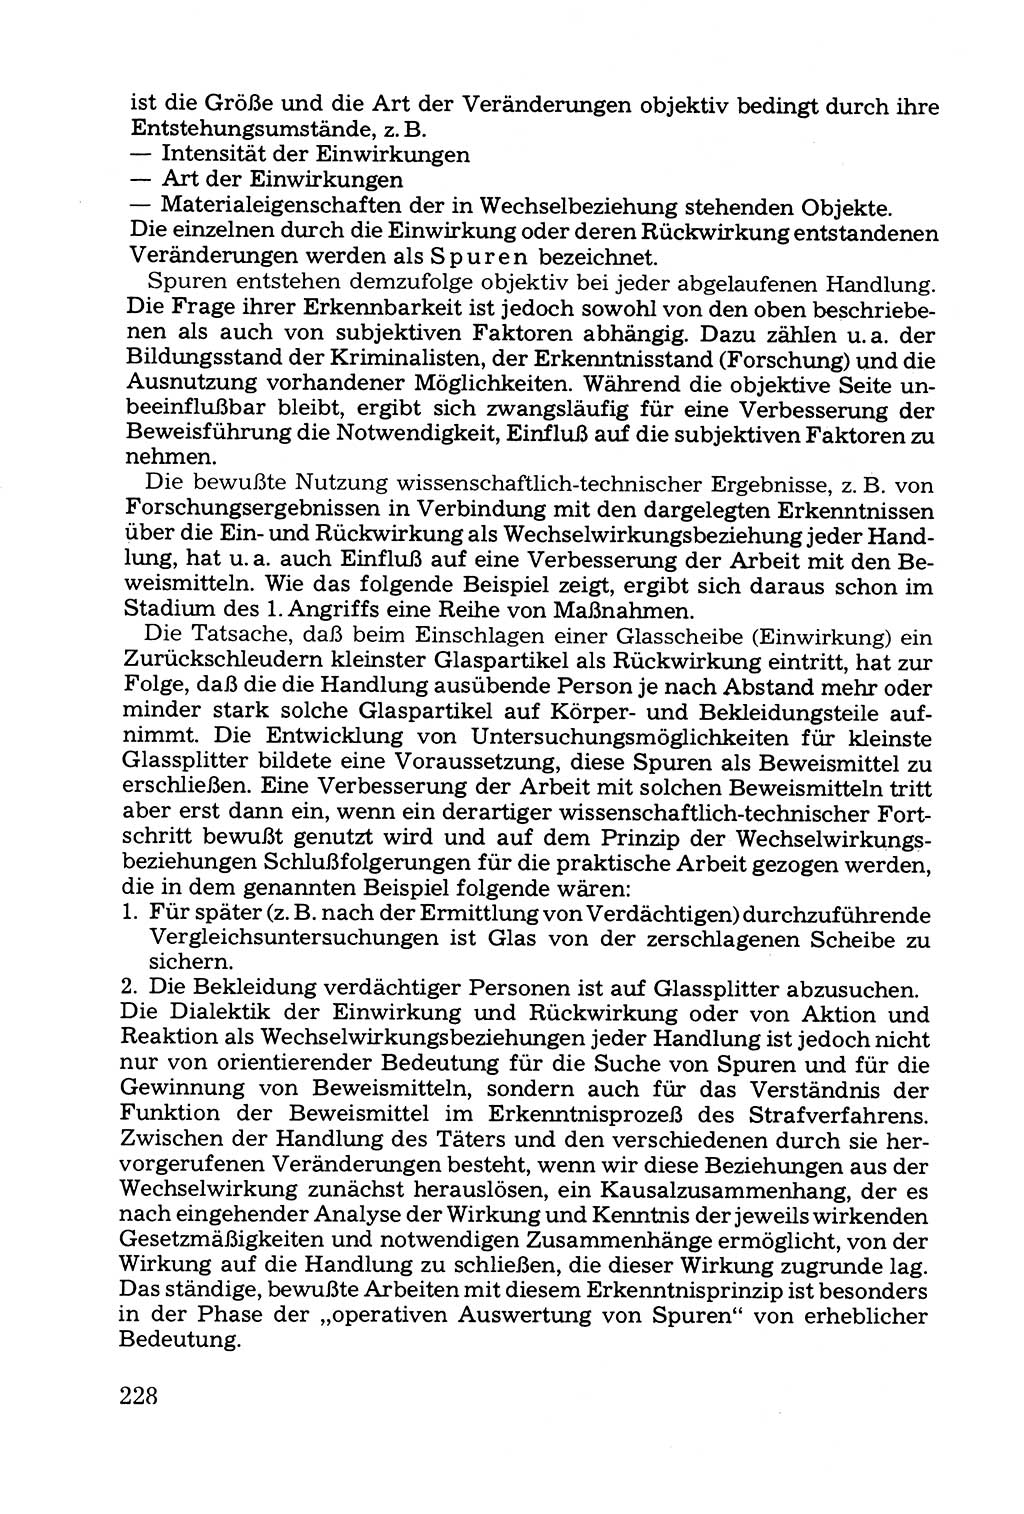 Grundfragen der Beweisführung im Ermittlungsverfahren [Deutsche Demokratische Republik (DDR)] 1980, Seite 228 (Bws.-Fhrg. EV DDR 1980, S. 228)